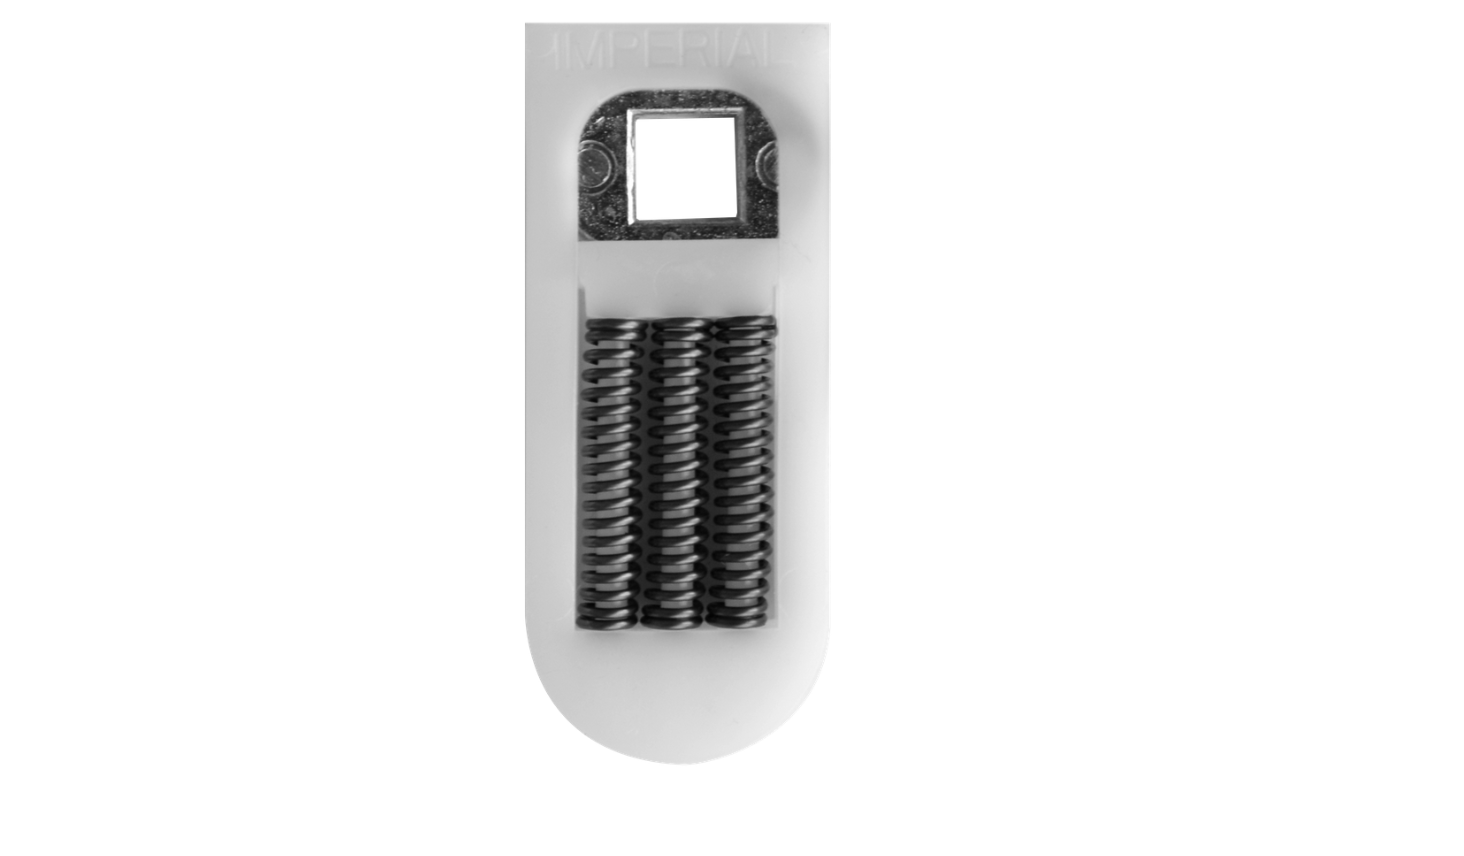 Spring Cassette for doors handles